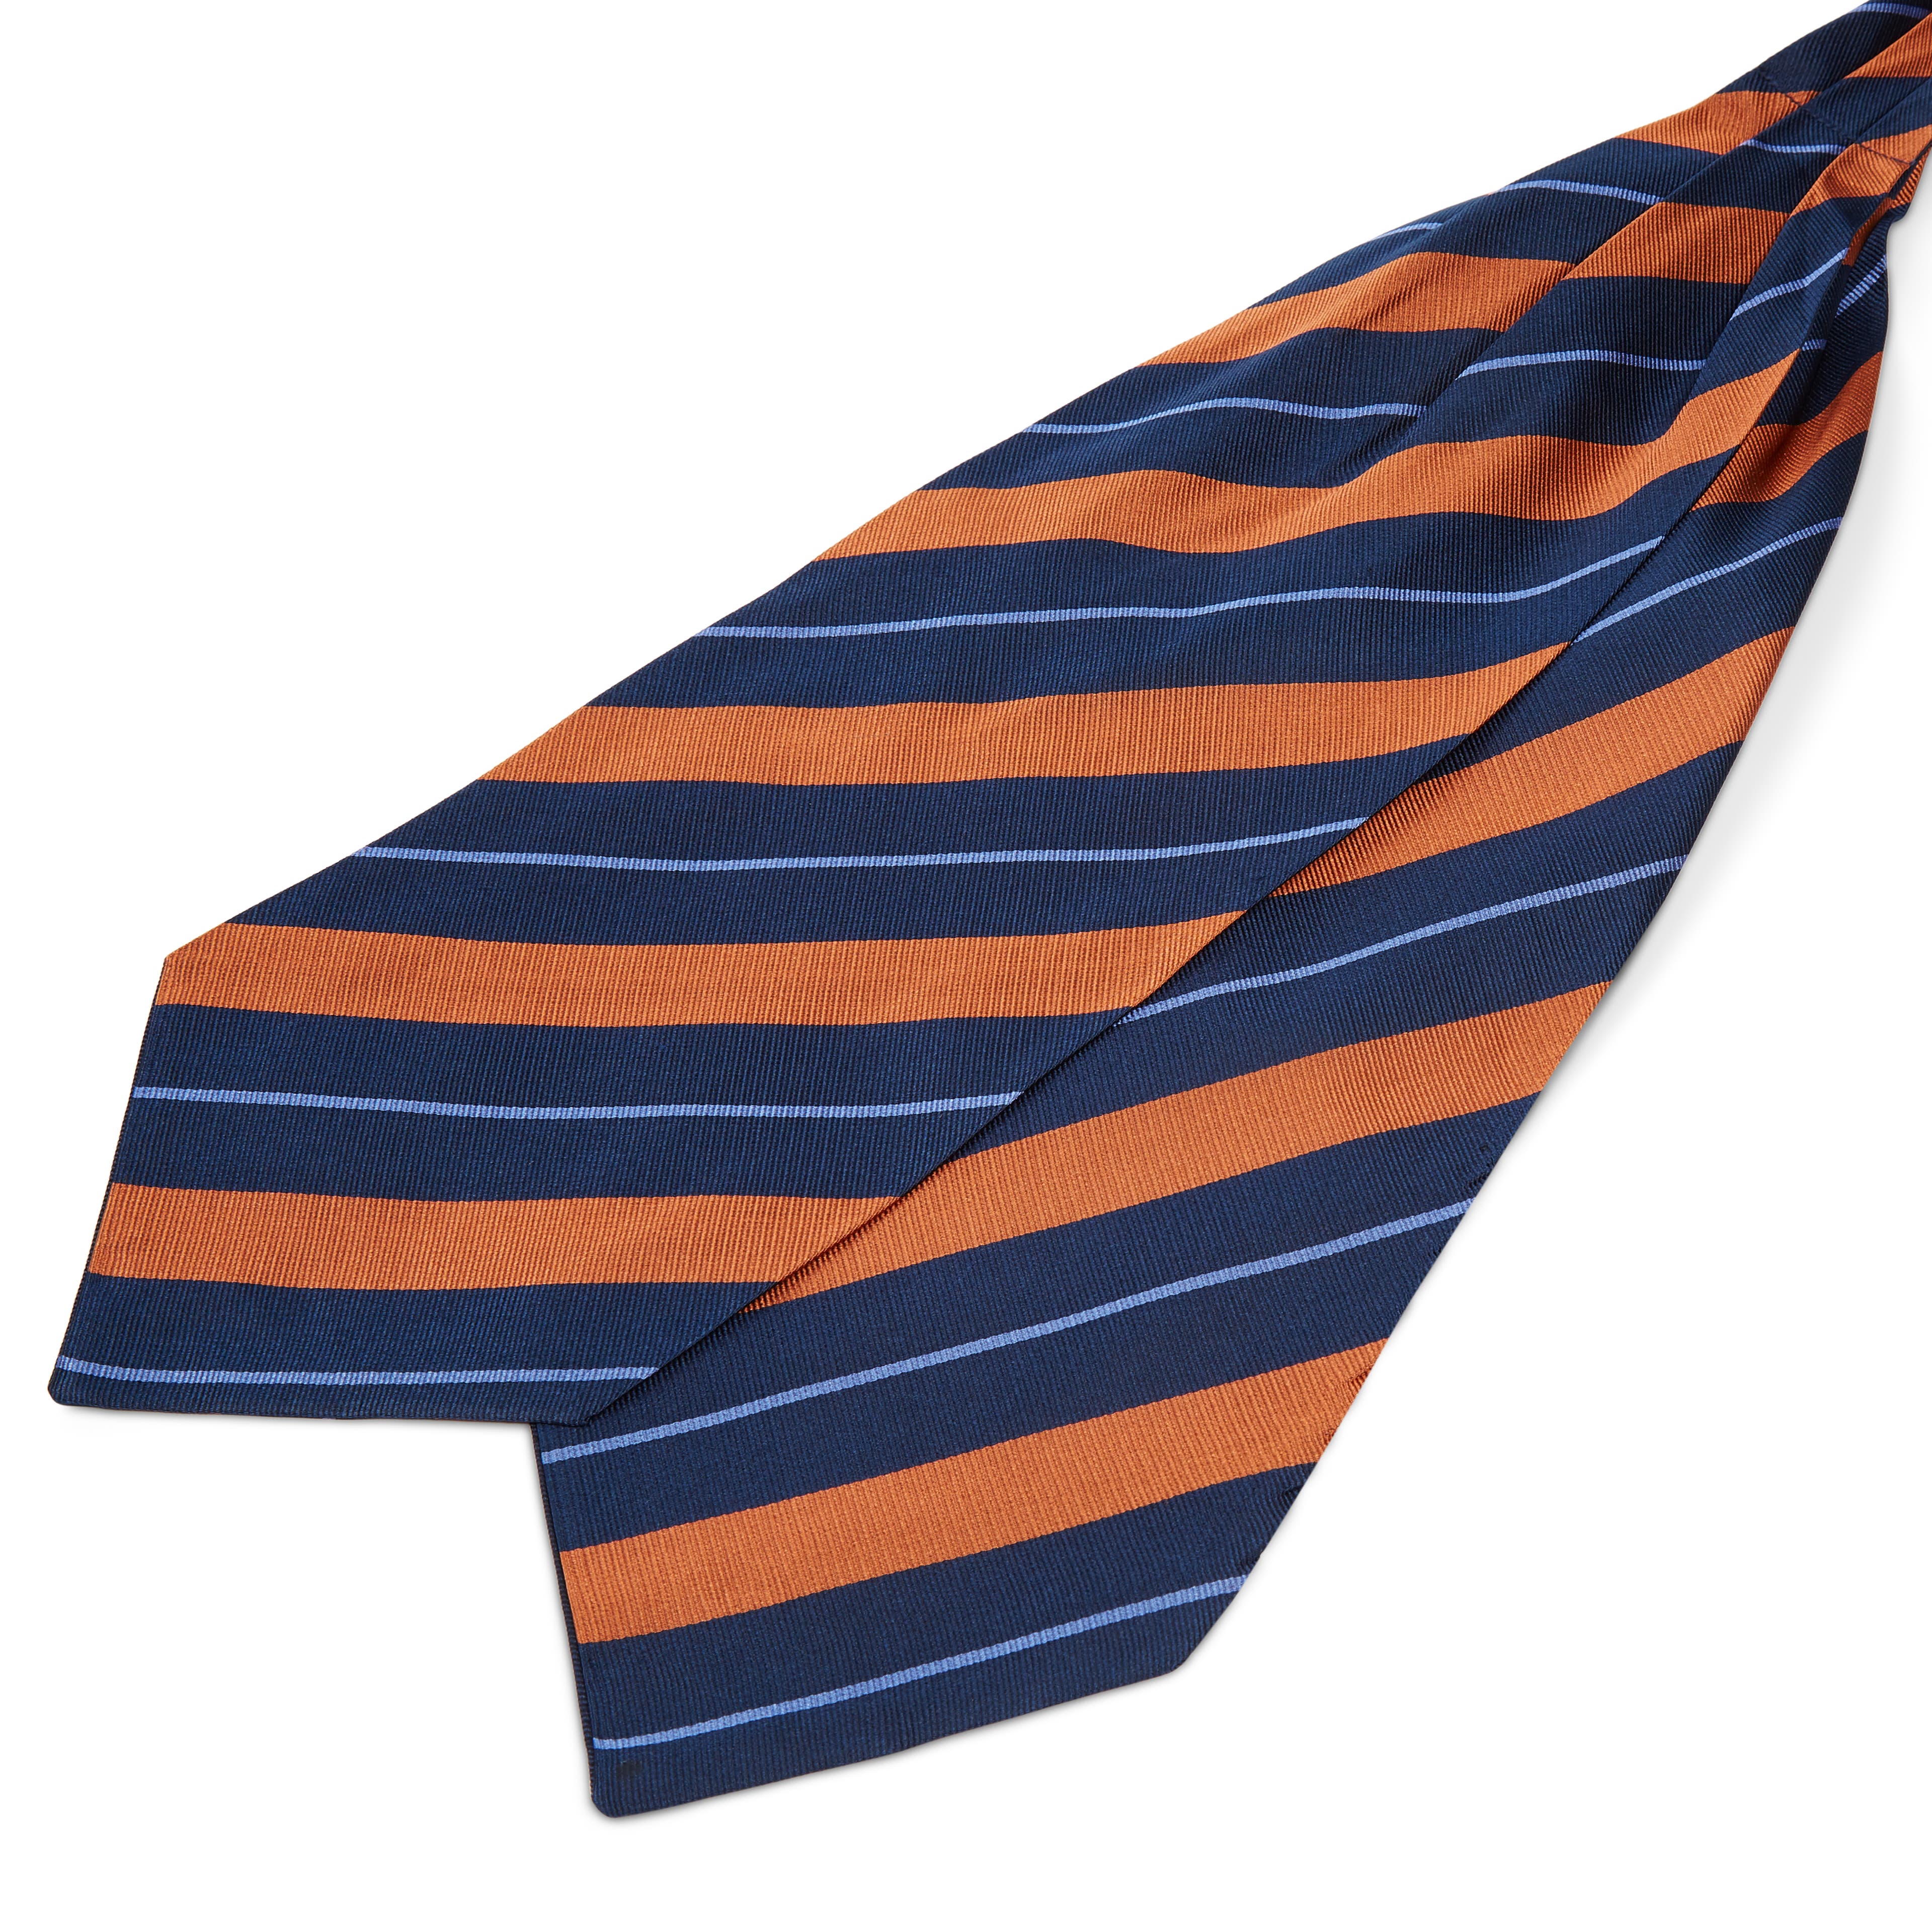 Cravatta ascot in seta blu navy con fantasia a righe arancio e azzurro